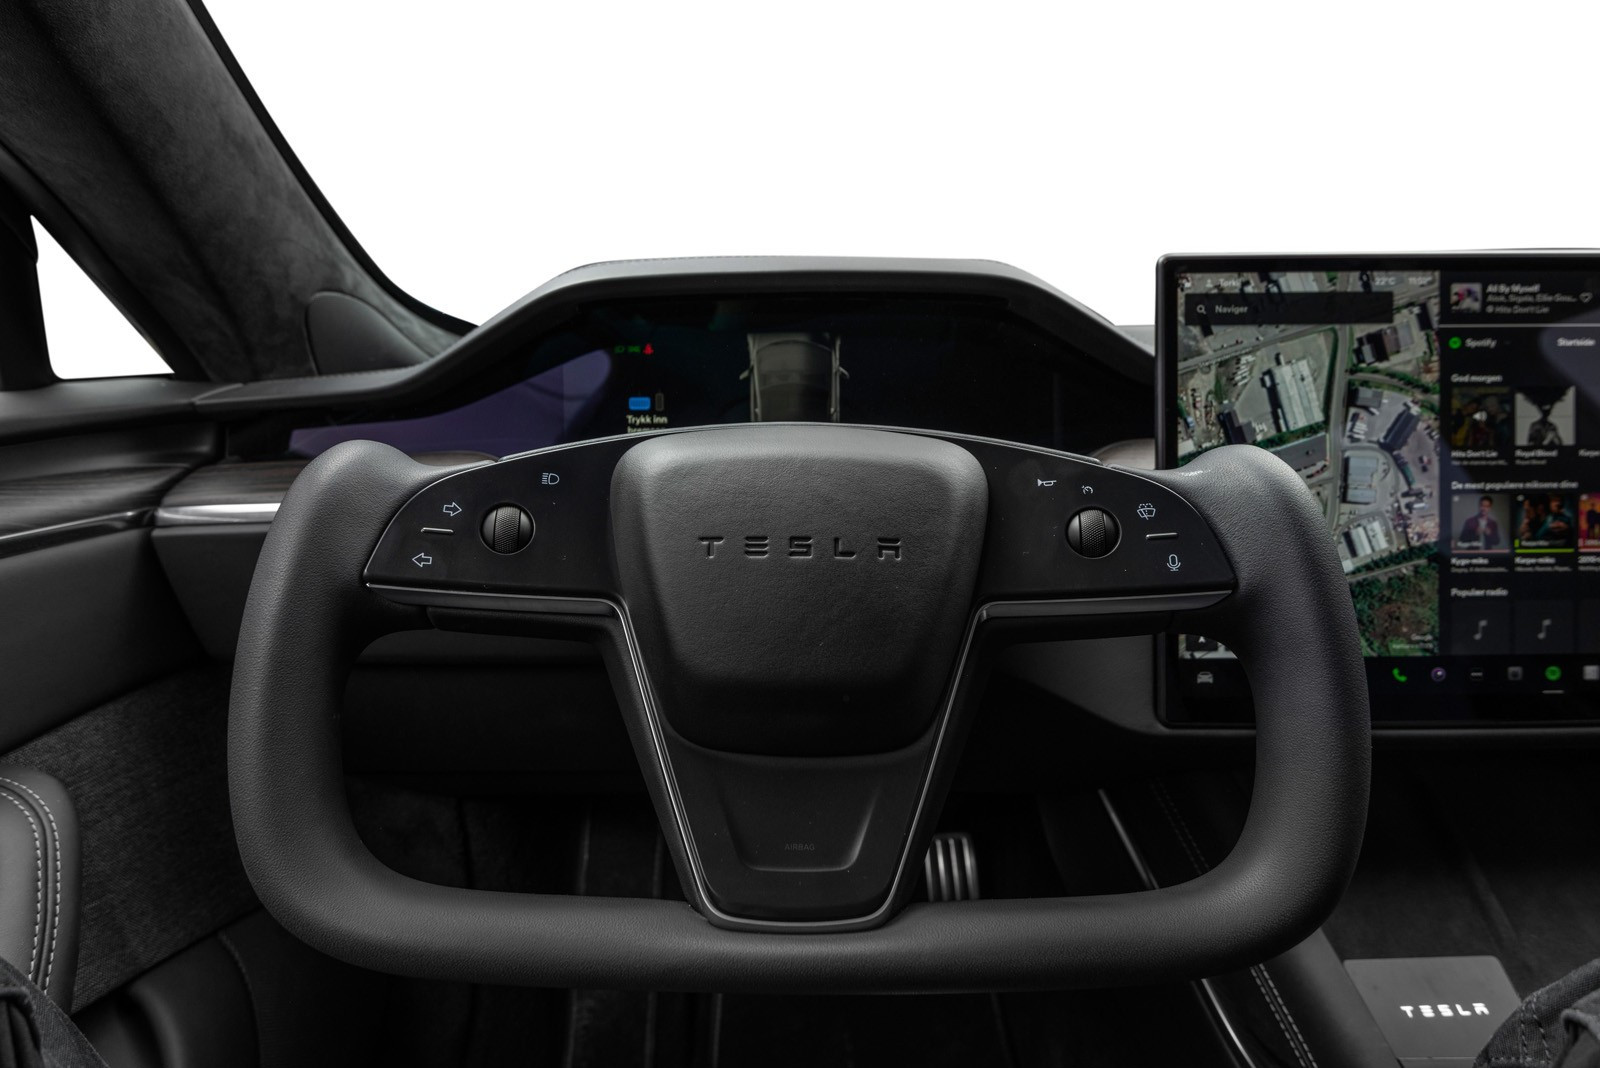 Yoke-rattet kan kombineres medinfotainment-delen på skjermen i bilen med flere nye og tilpassede bilspill-apper, slik at man i ro og mak kan øve seg (og bli vant til) praktisk bruk av det nye Yoke-rattet.